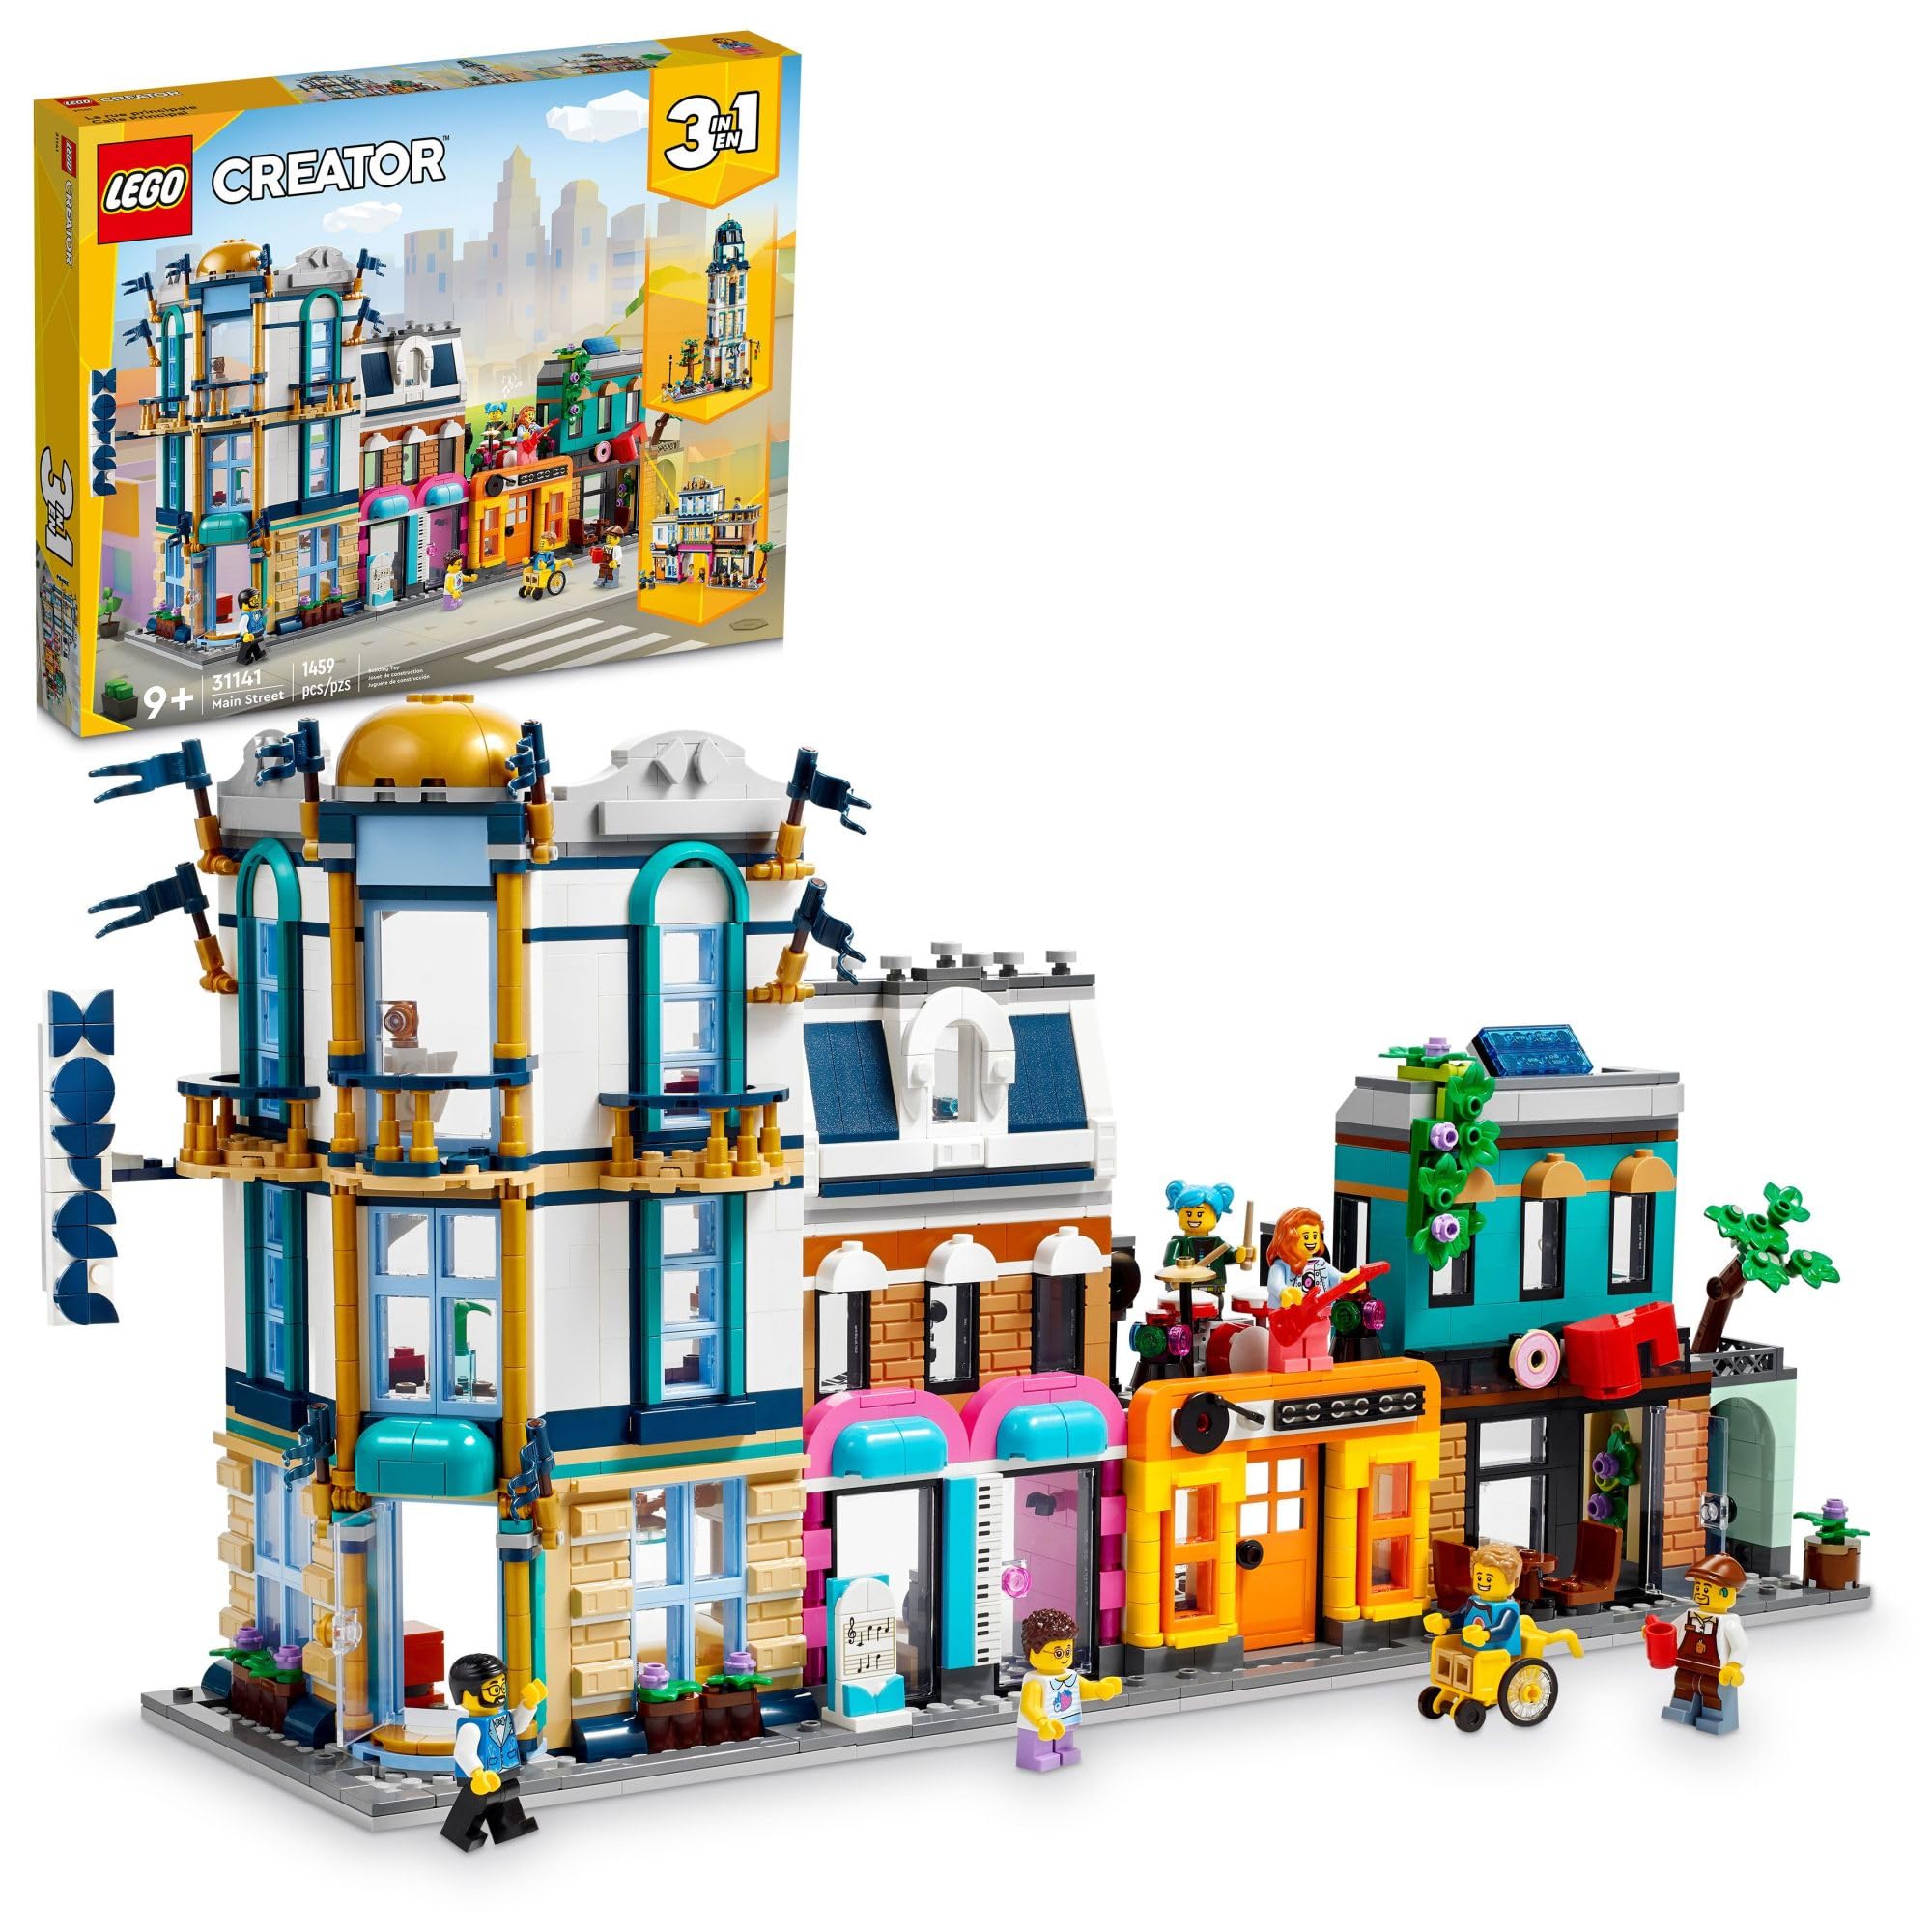 史低價！LEGO樂高 Creator創意百變系列 31141 城鎮大街，原價$139.99，現僅售$90.89，免運費！